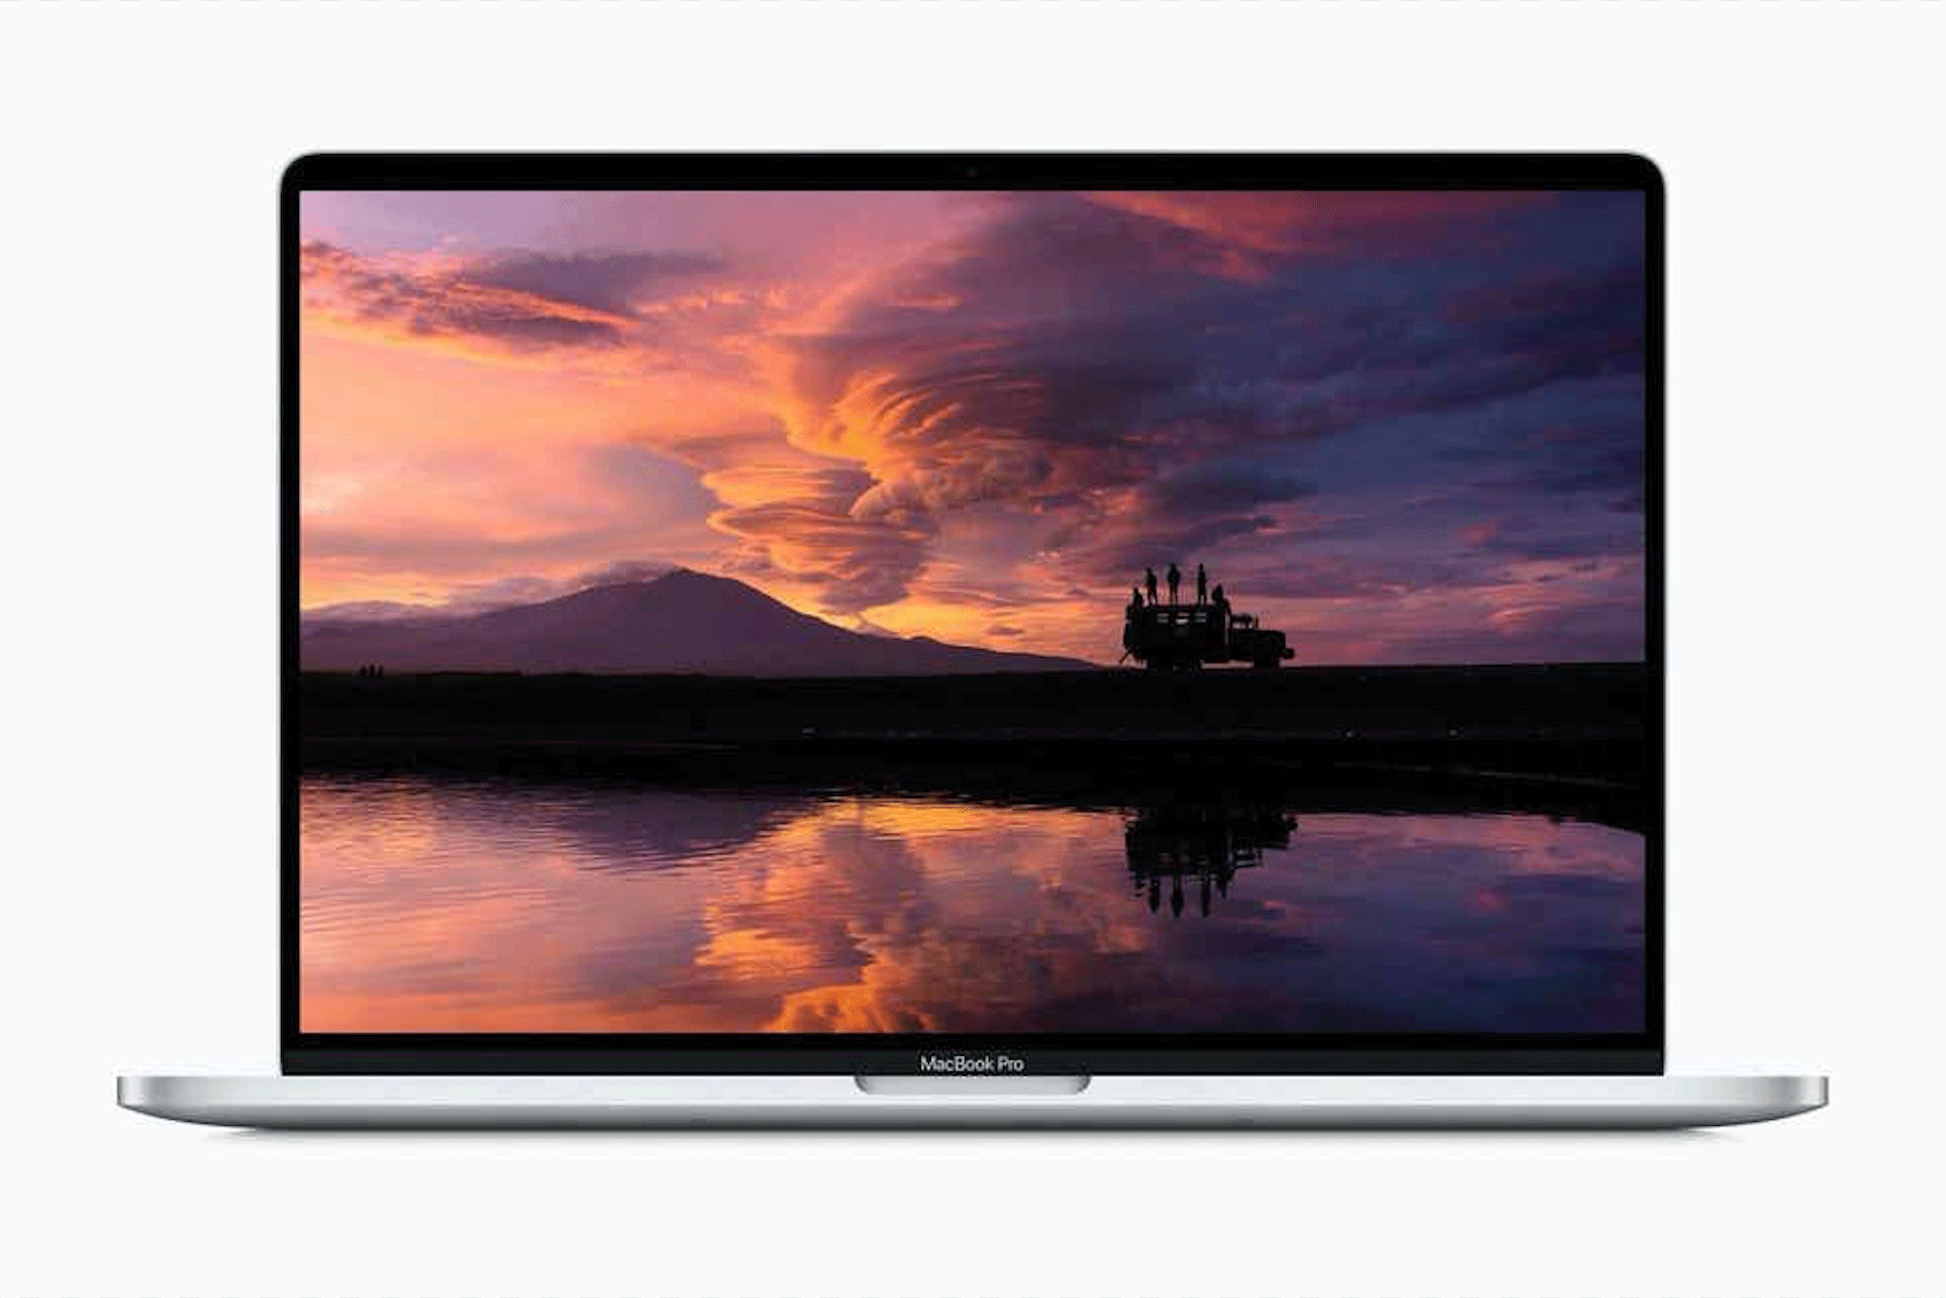 MacBook Pro Screen Replacement & Repair